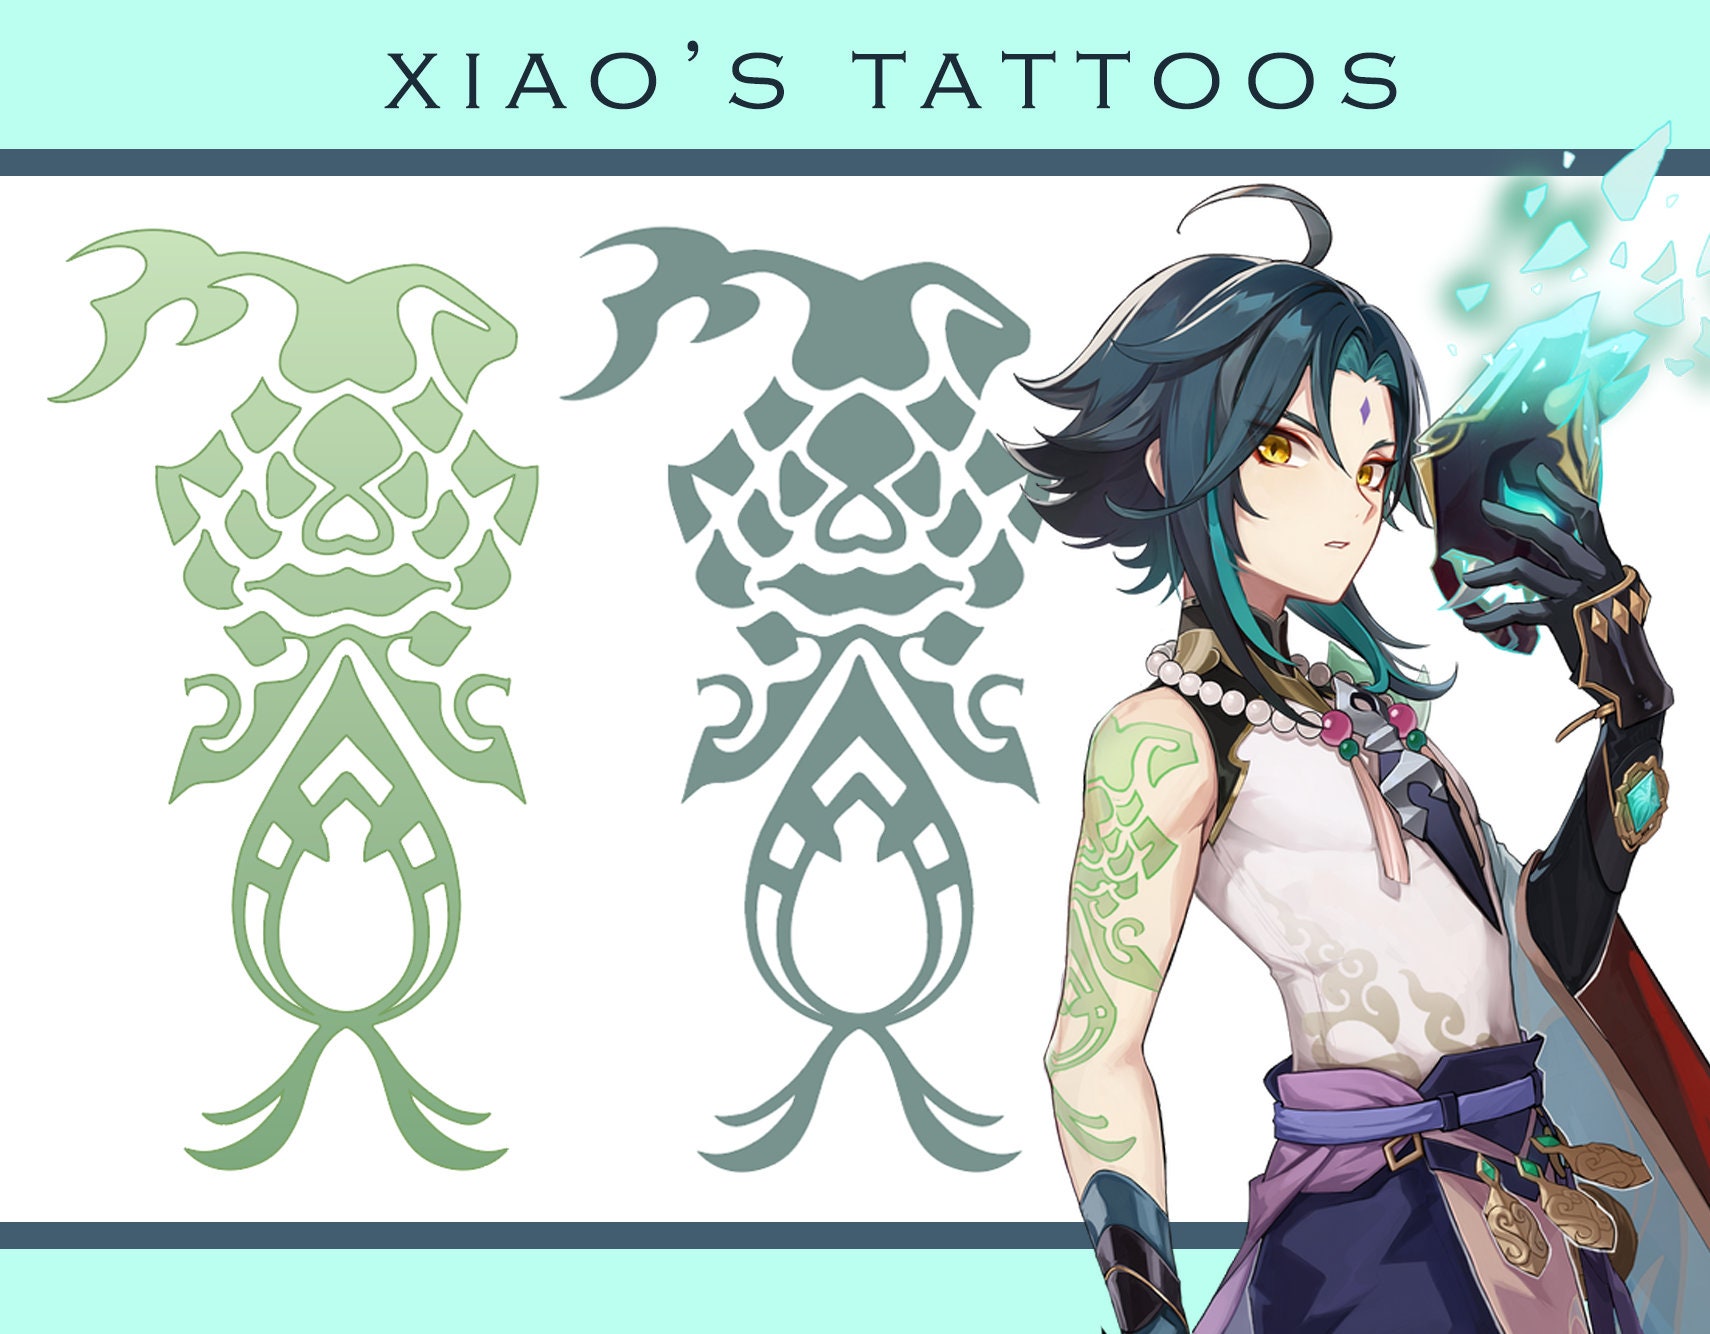 Bí ẩn và tinh tế với Xiao Tattoo và các ý tưởng thiết kế khác